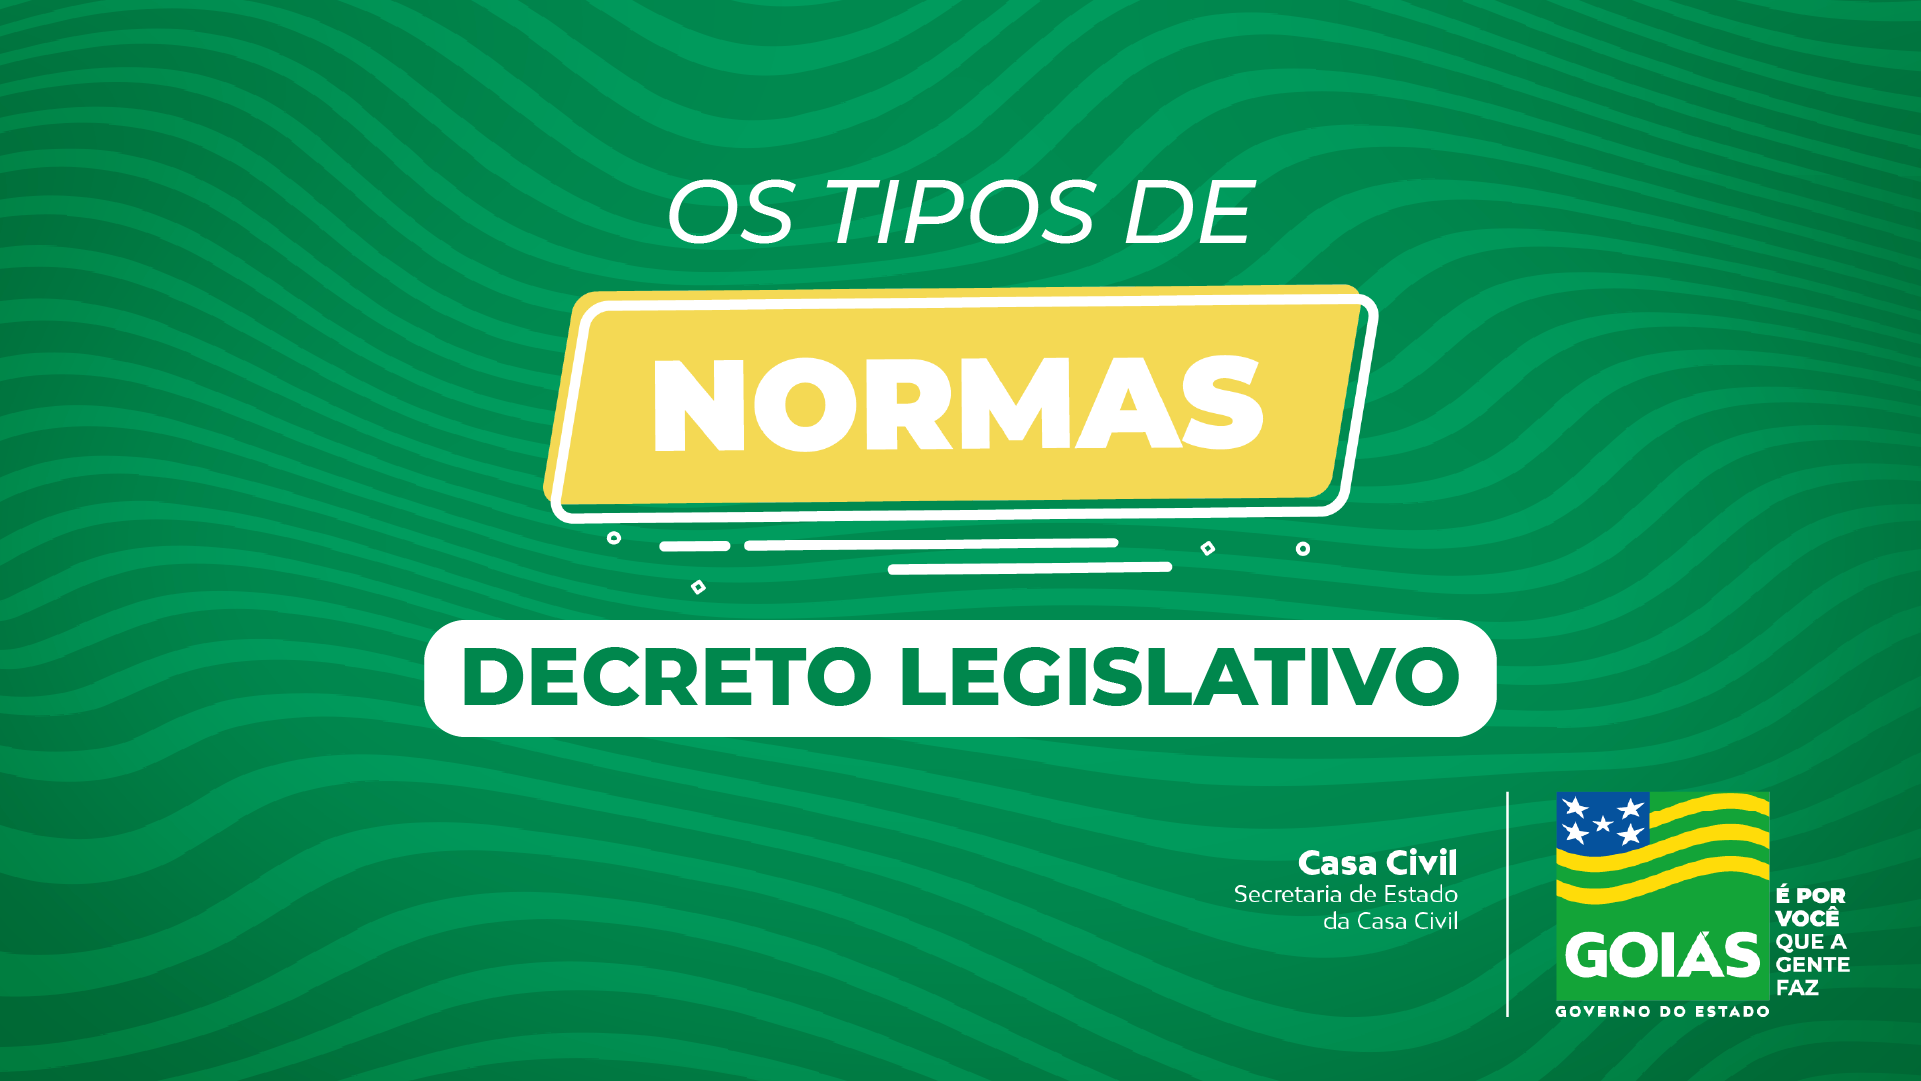 Iniciativa da SECC busca esclarecer, de forma simples e direta, as normas vigentes e a legislação em Goiás por meio de uma série de vídeos didáticos